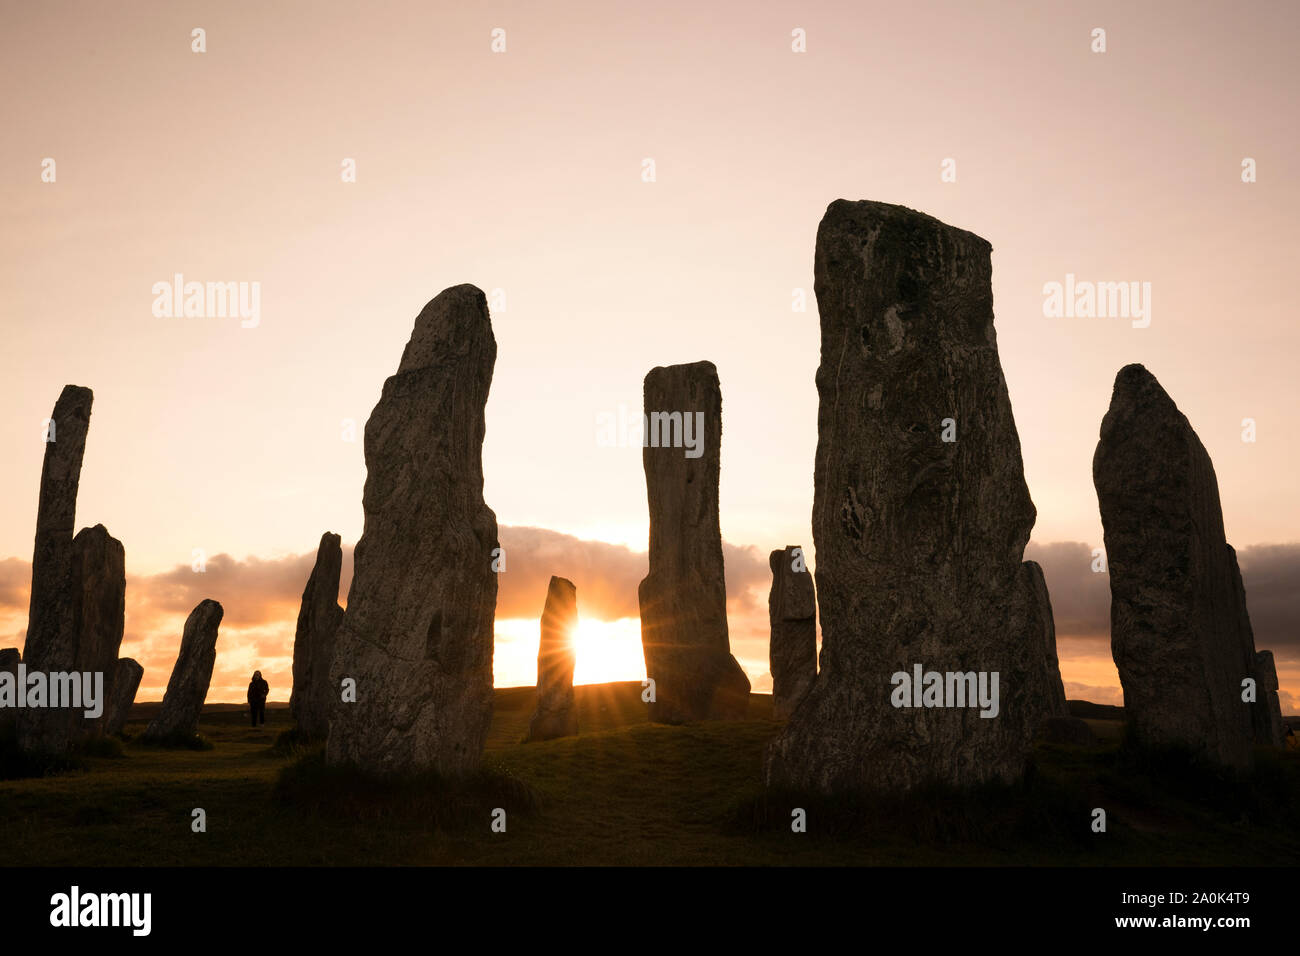 Starburst Sonnenuntergang am Callanish Standing Stones Silhouette gegen einen hellen Himmel auf der Insel Lewis, Äußere Hebriden, Schottland, Großbritannien, Europa Stockfoto